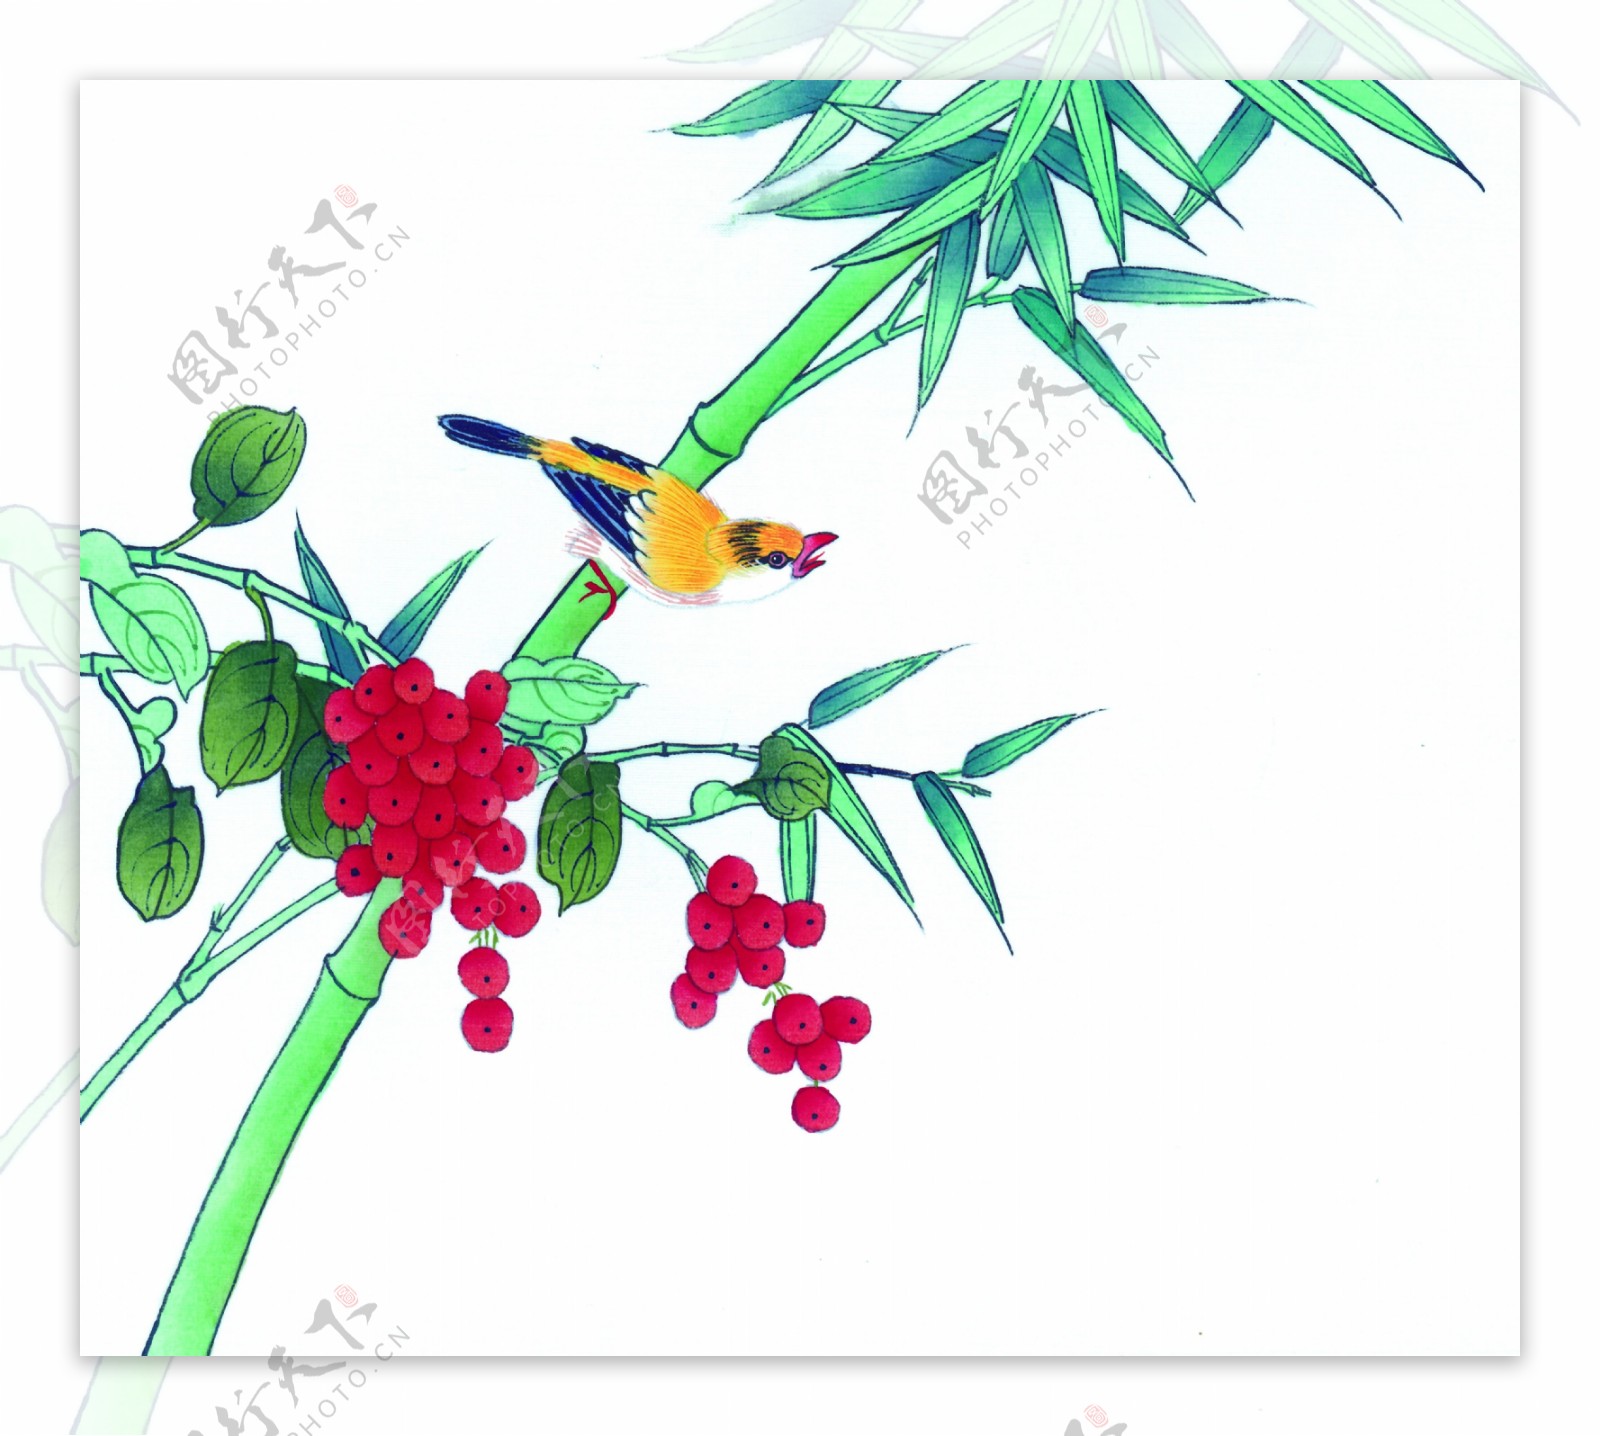 竹子野果与小鸟图片